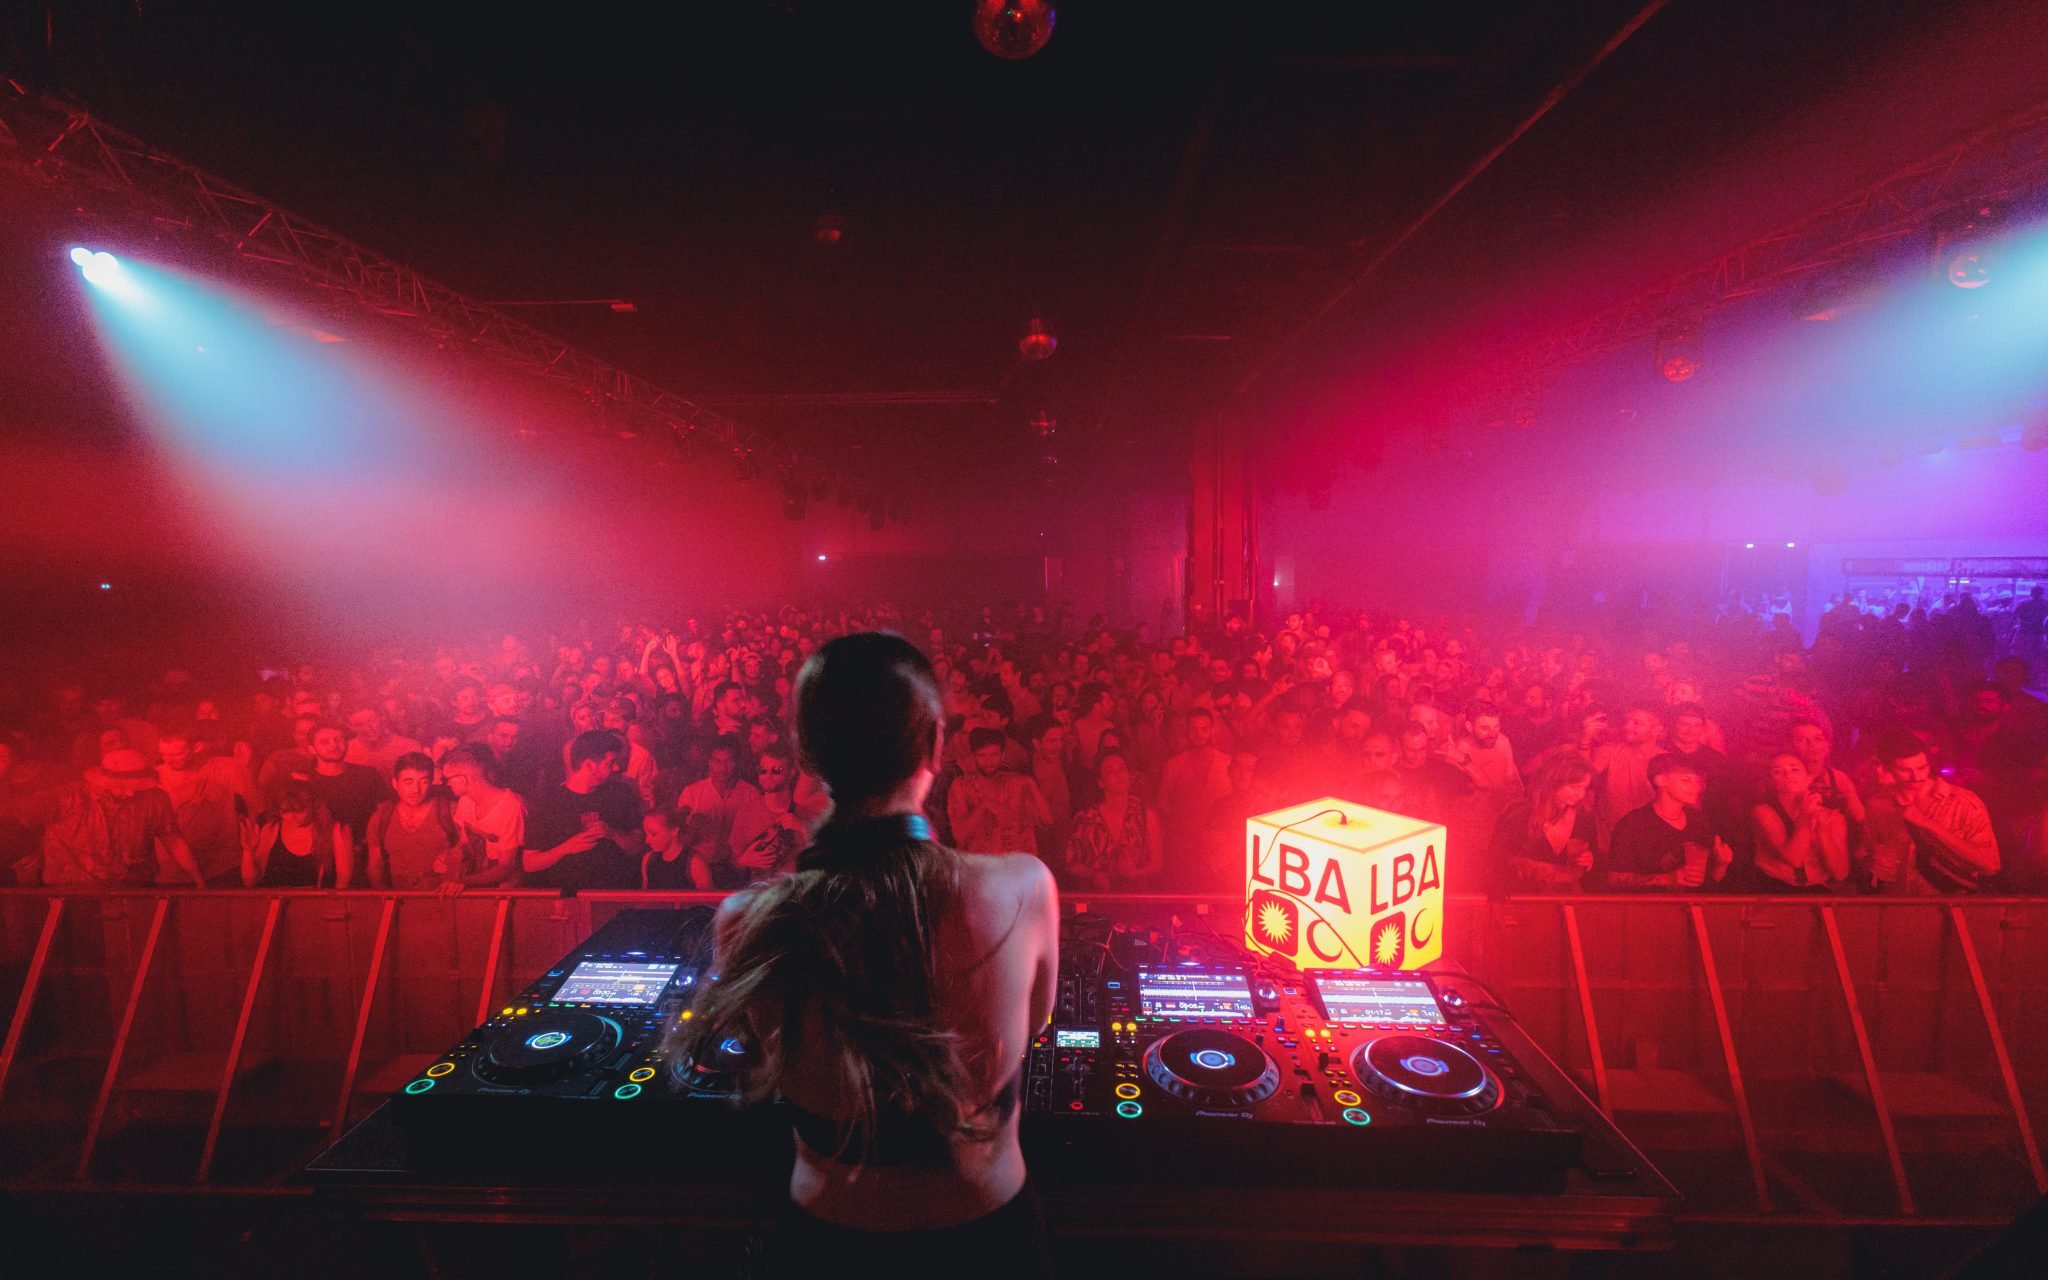 Photographie de nuit derrière un DJ présent au Festival Le Bon Air, avec une foule de spectateurs.